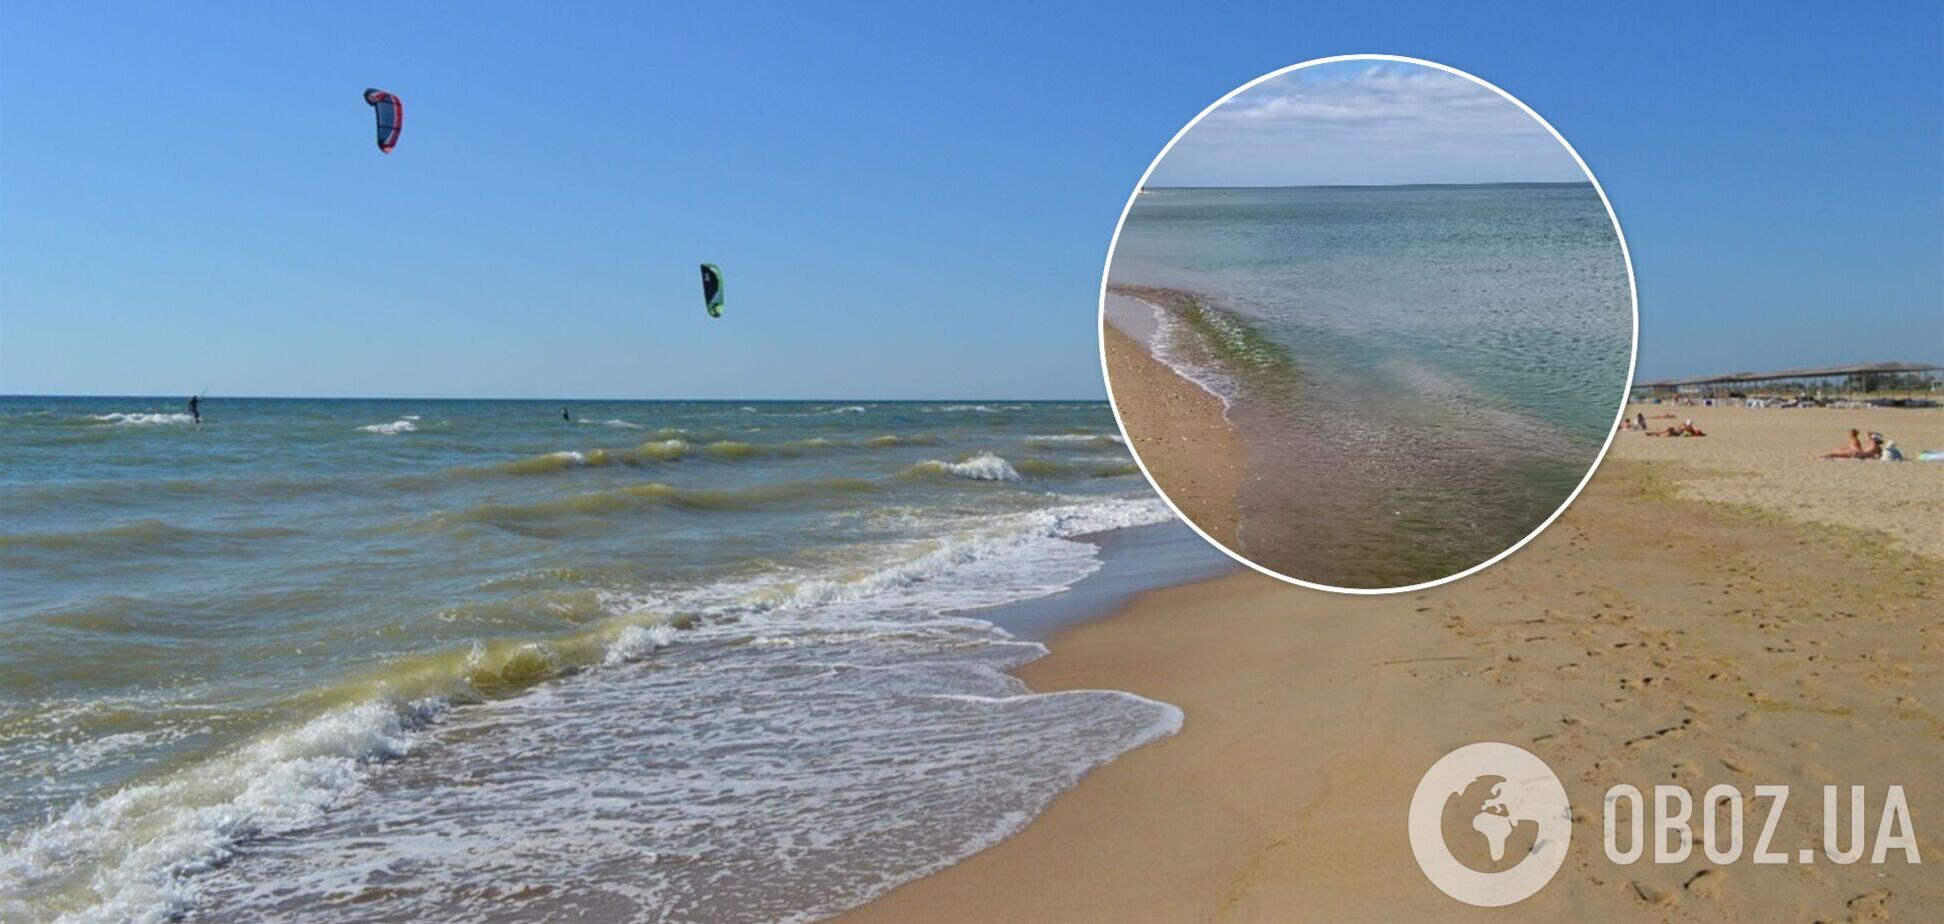 Блох и медуз нет, а водоросли не мешают: блогер расхвалил отдых в Каролино-Бугаз 2021. Видео